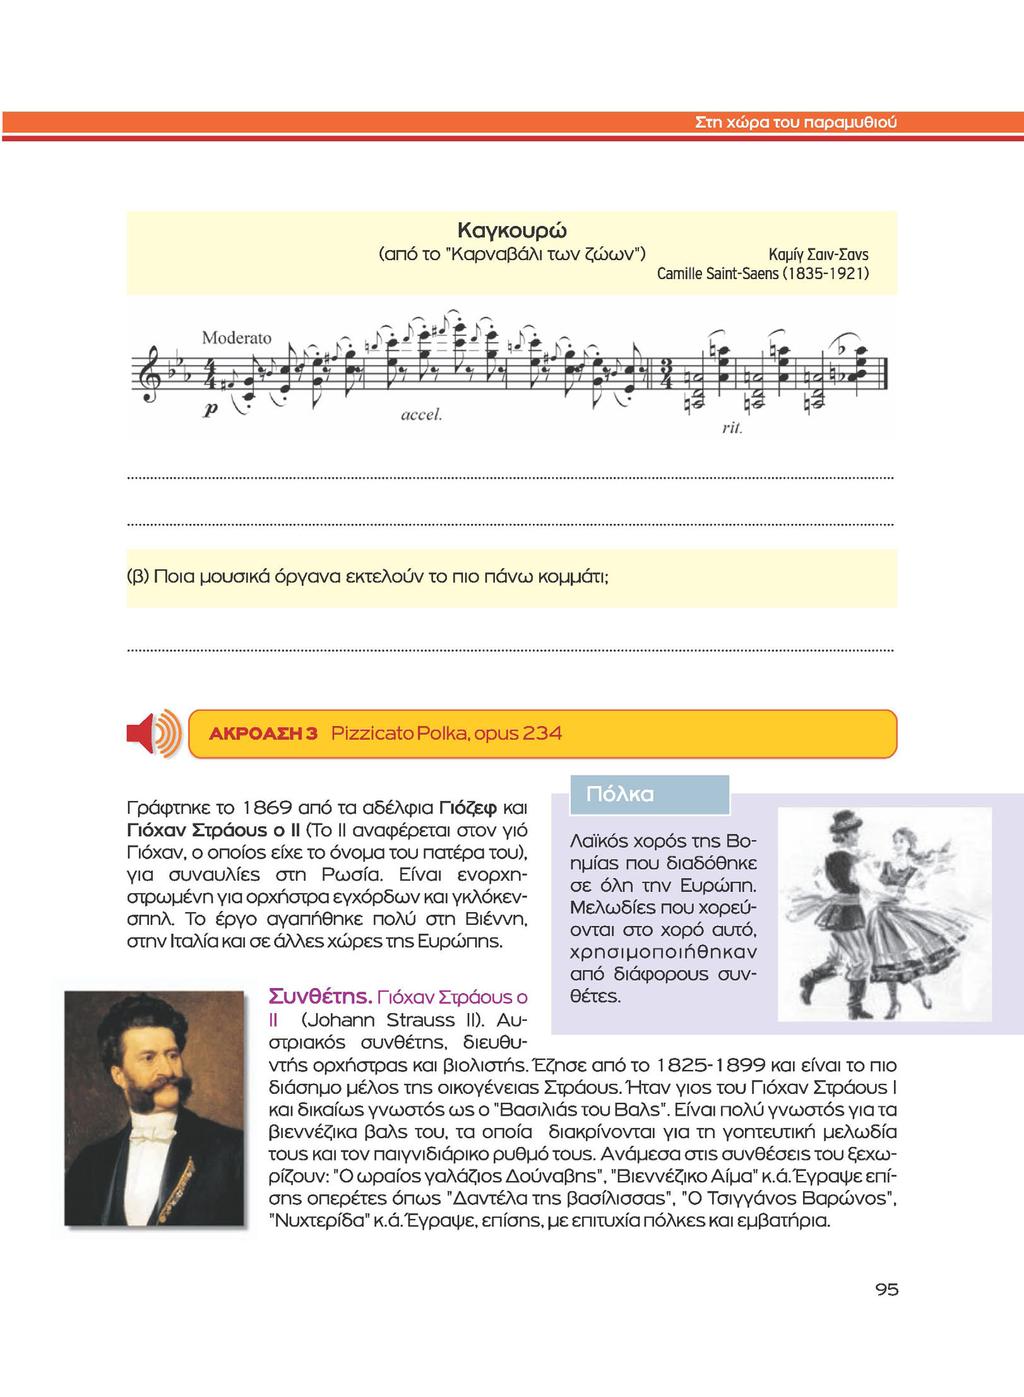 Καγκουρώ (από το "Καρναβάλι των ζώων") Καμίγ Σαιv-Σαvς Camille Saint-Saens (1835-1921) (β) Ποια μουσικά όργανα εκτελούν το πιο πάνω κομμάτι; ΑΚΡΟΑΣΗ 3 Pizzicato Polka, opus 234 Πόλκα Γράφτηκε το 1869